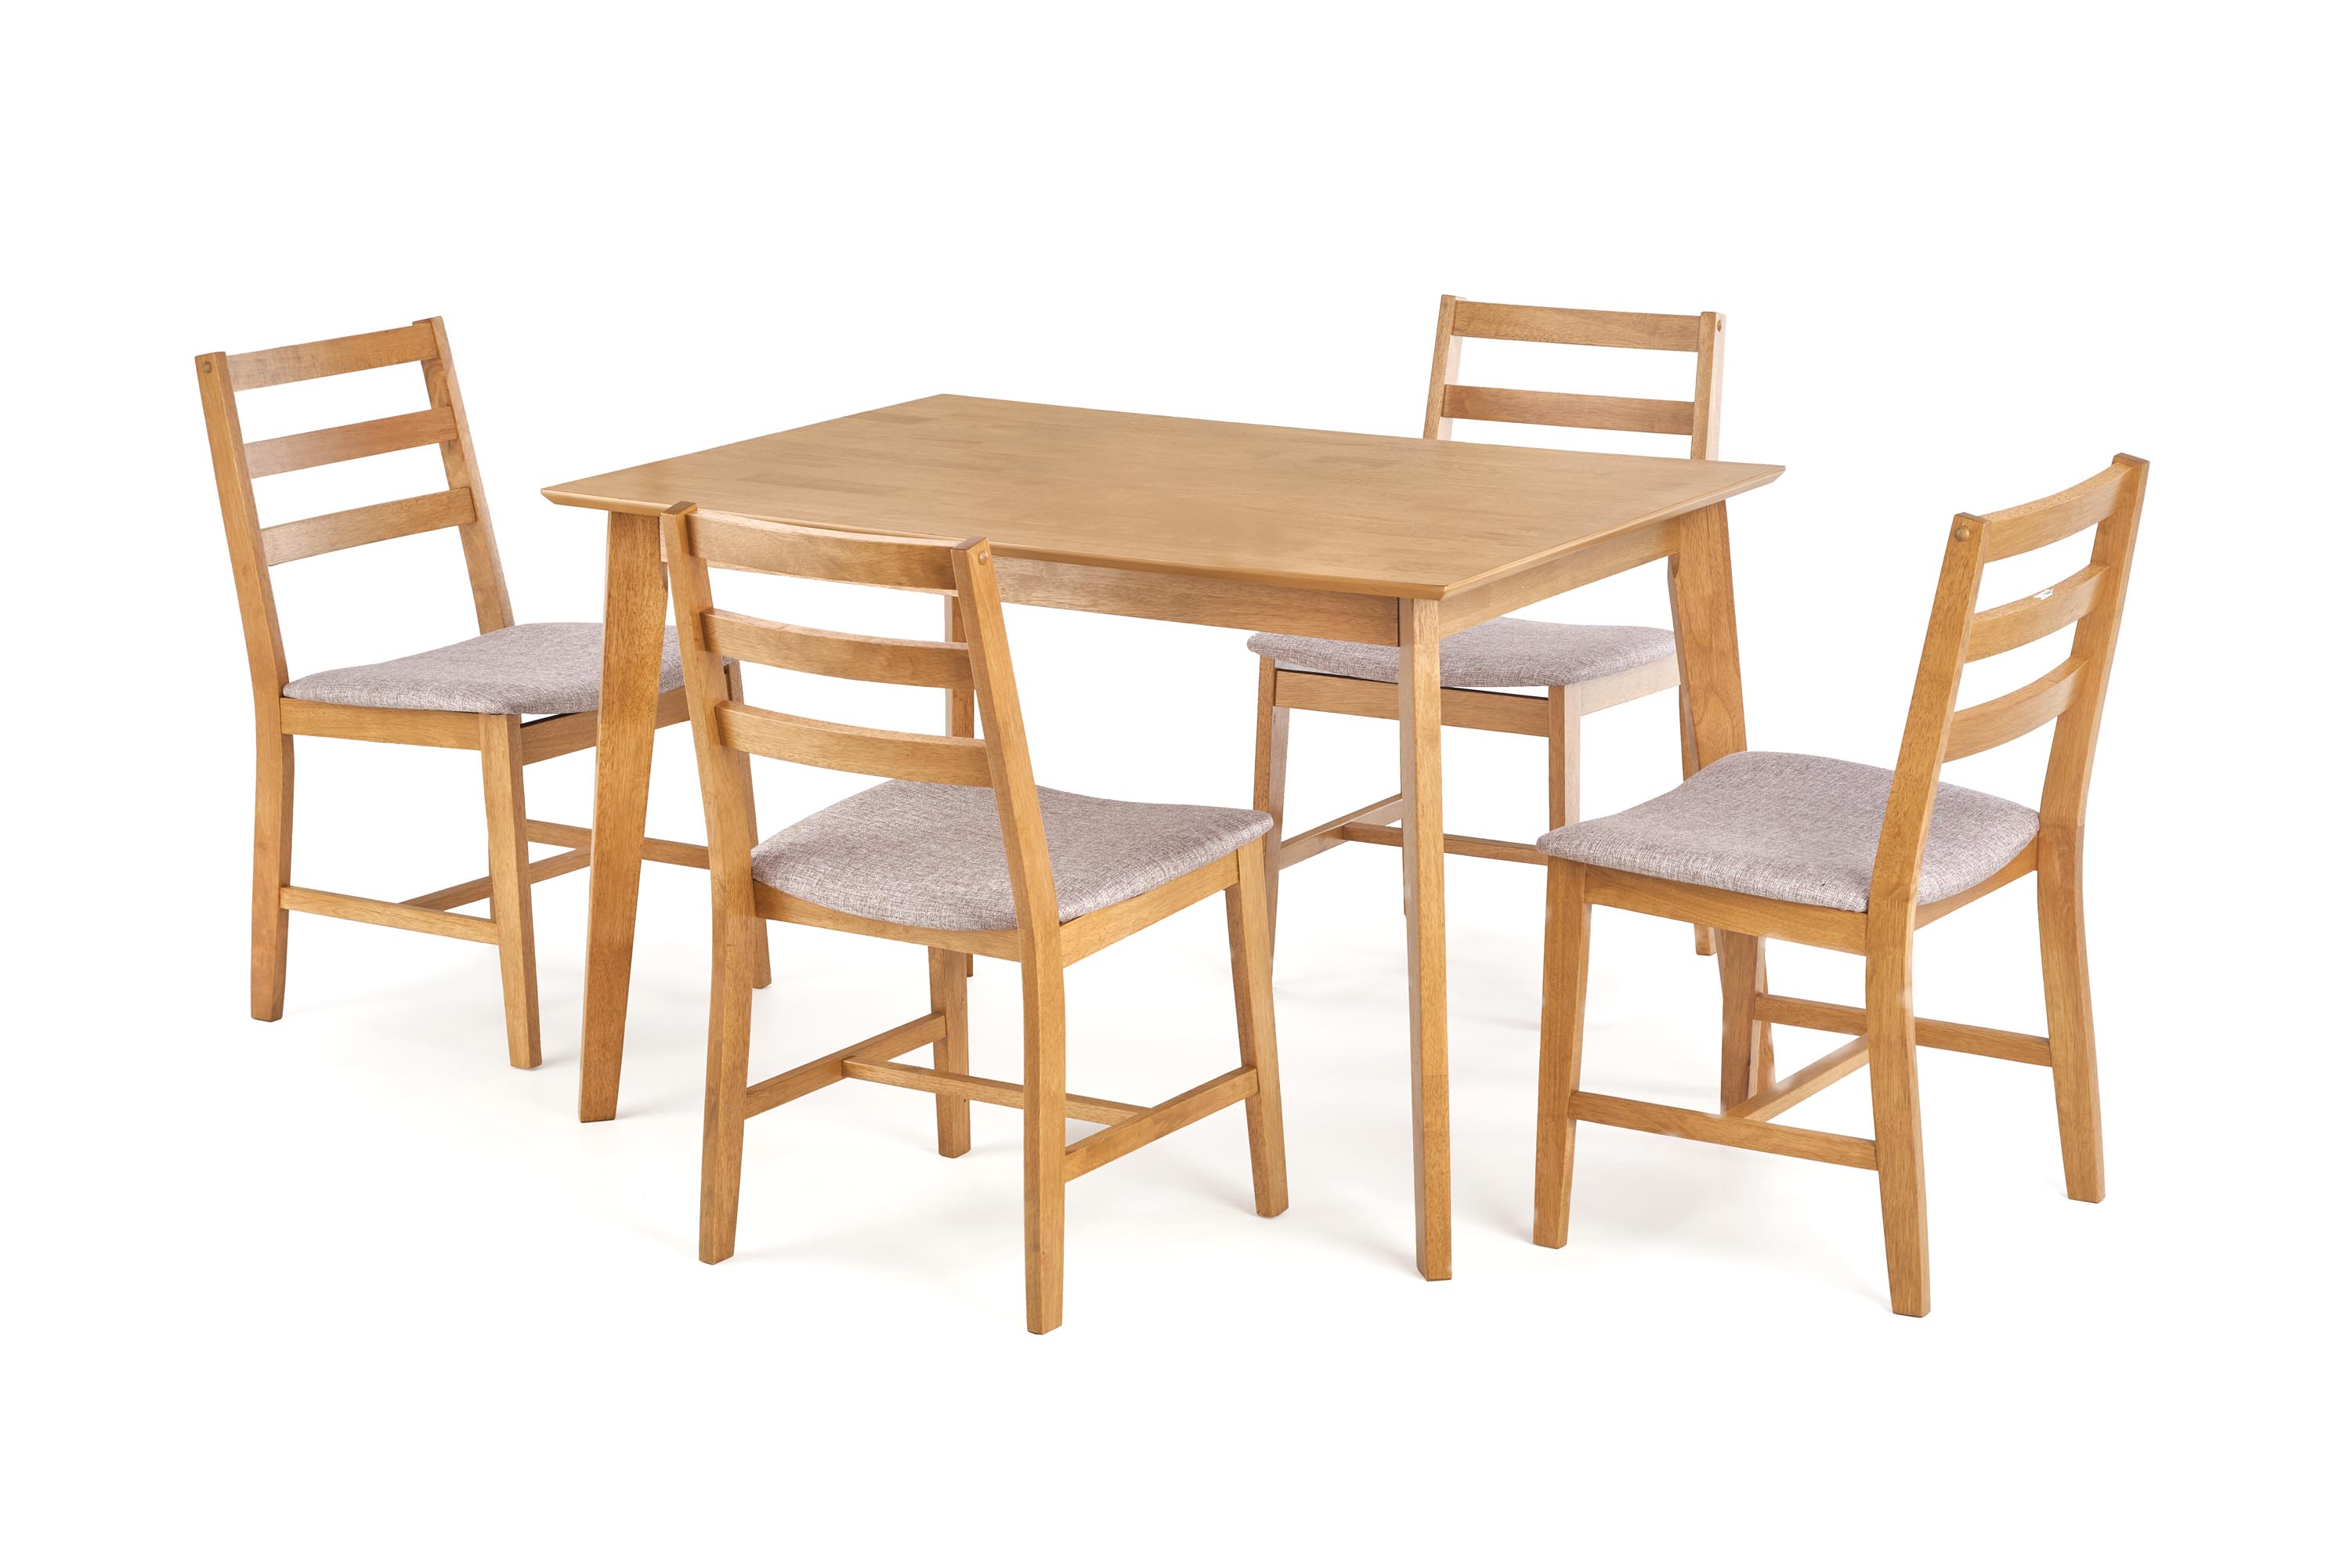 CORDOBA stół + 4 krzesła cordoba stół + 4 krzesła